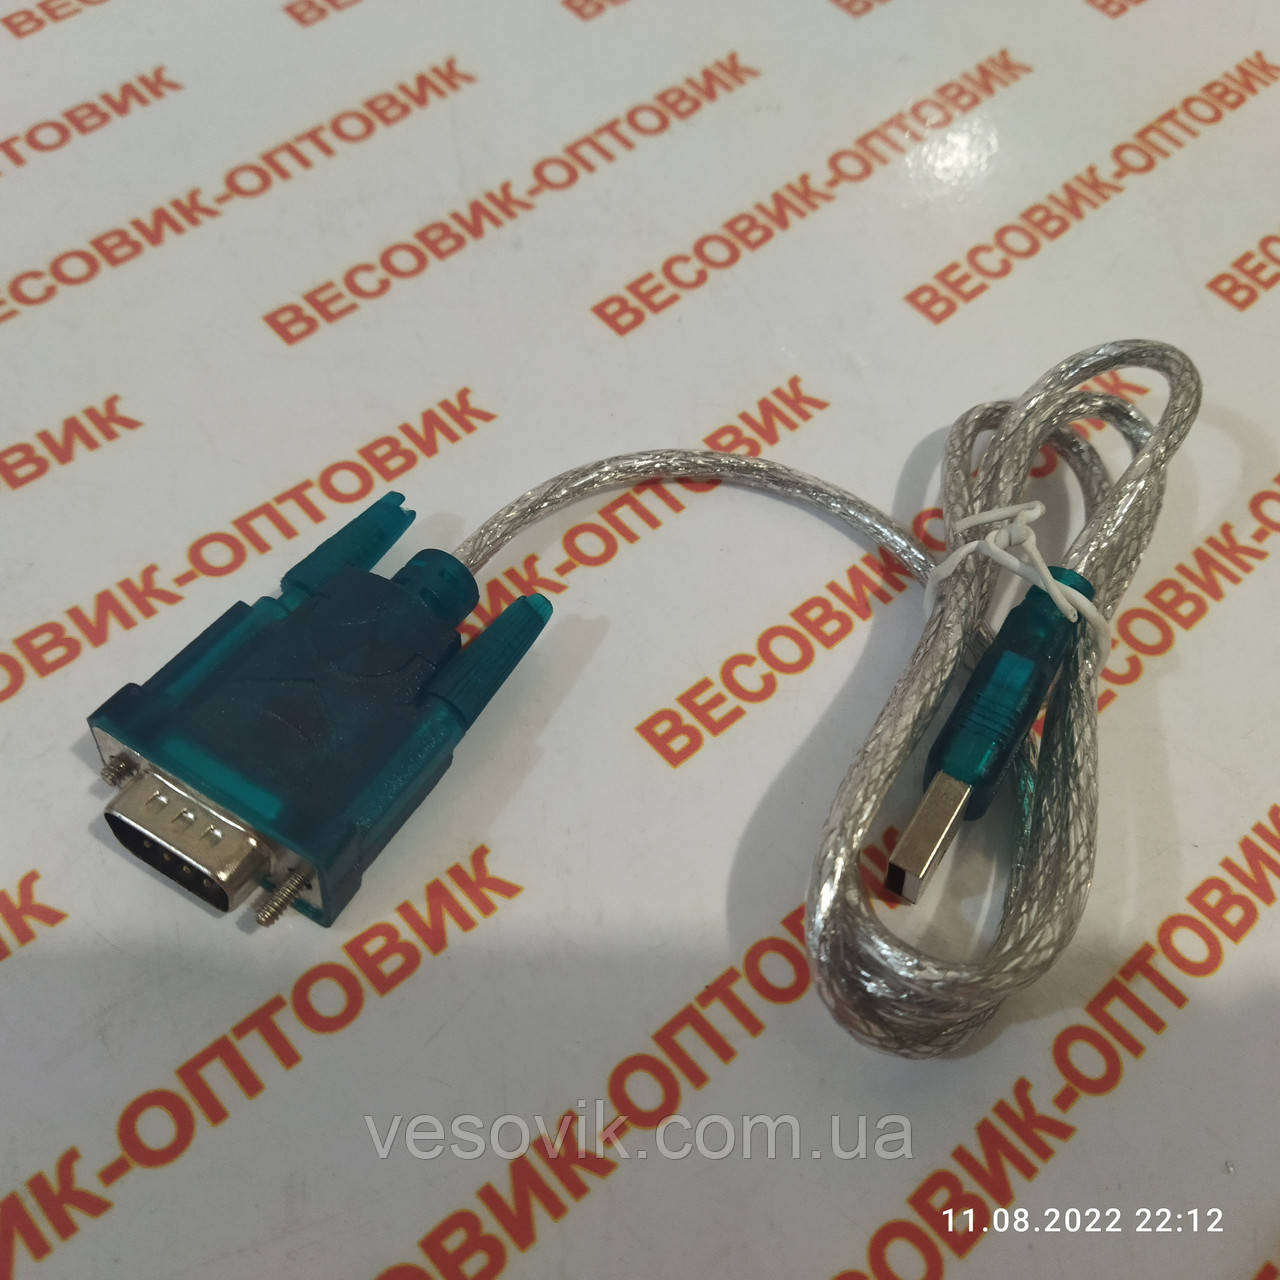 Перехідник (USB-COMport перехідник) конвертер з кабелем 85 см KELI USB RS232 DB9 COM HL-340